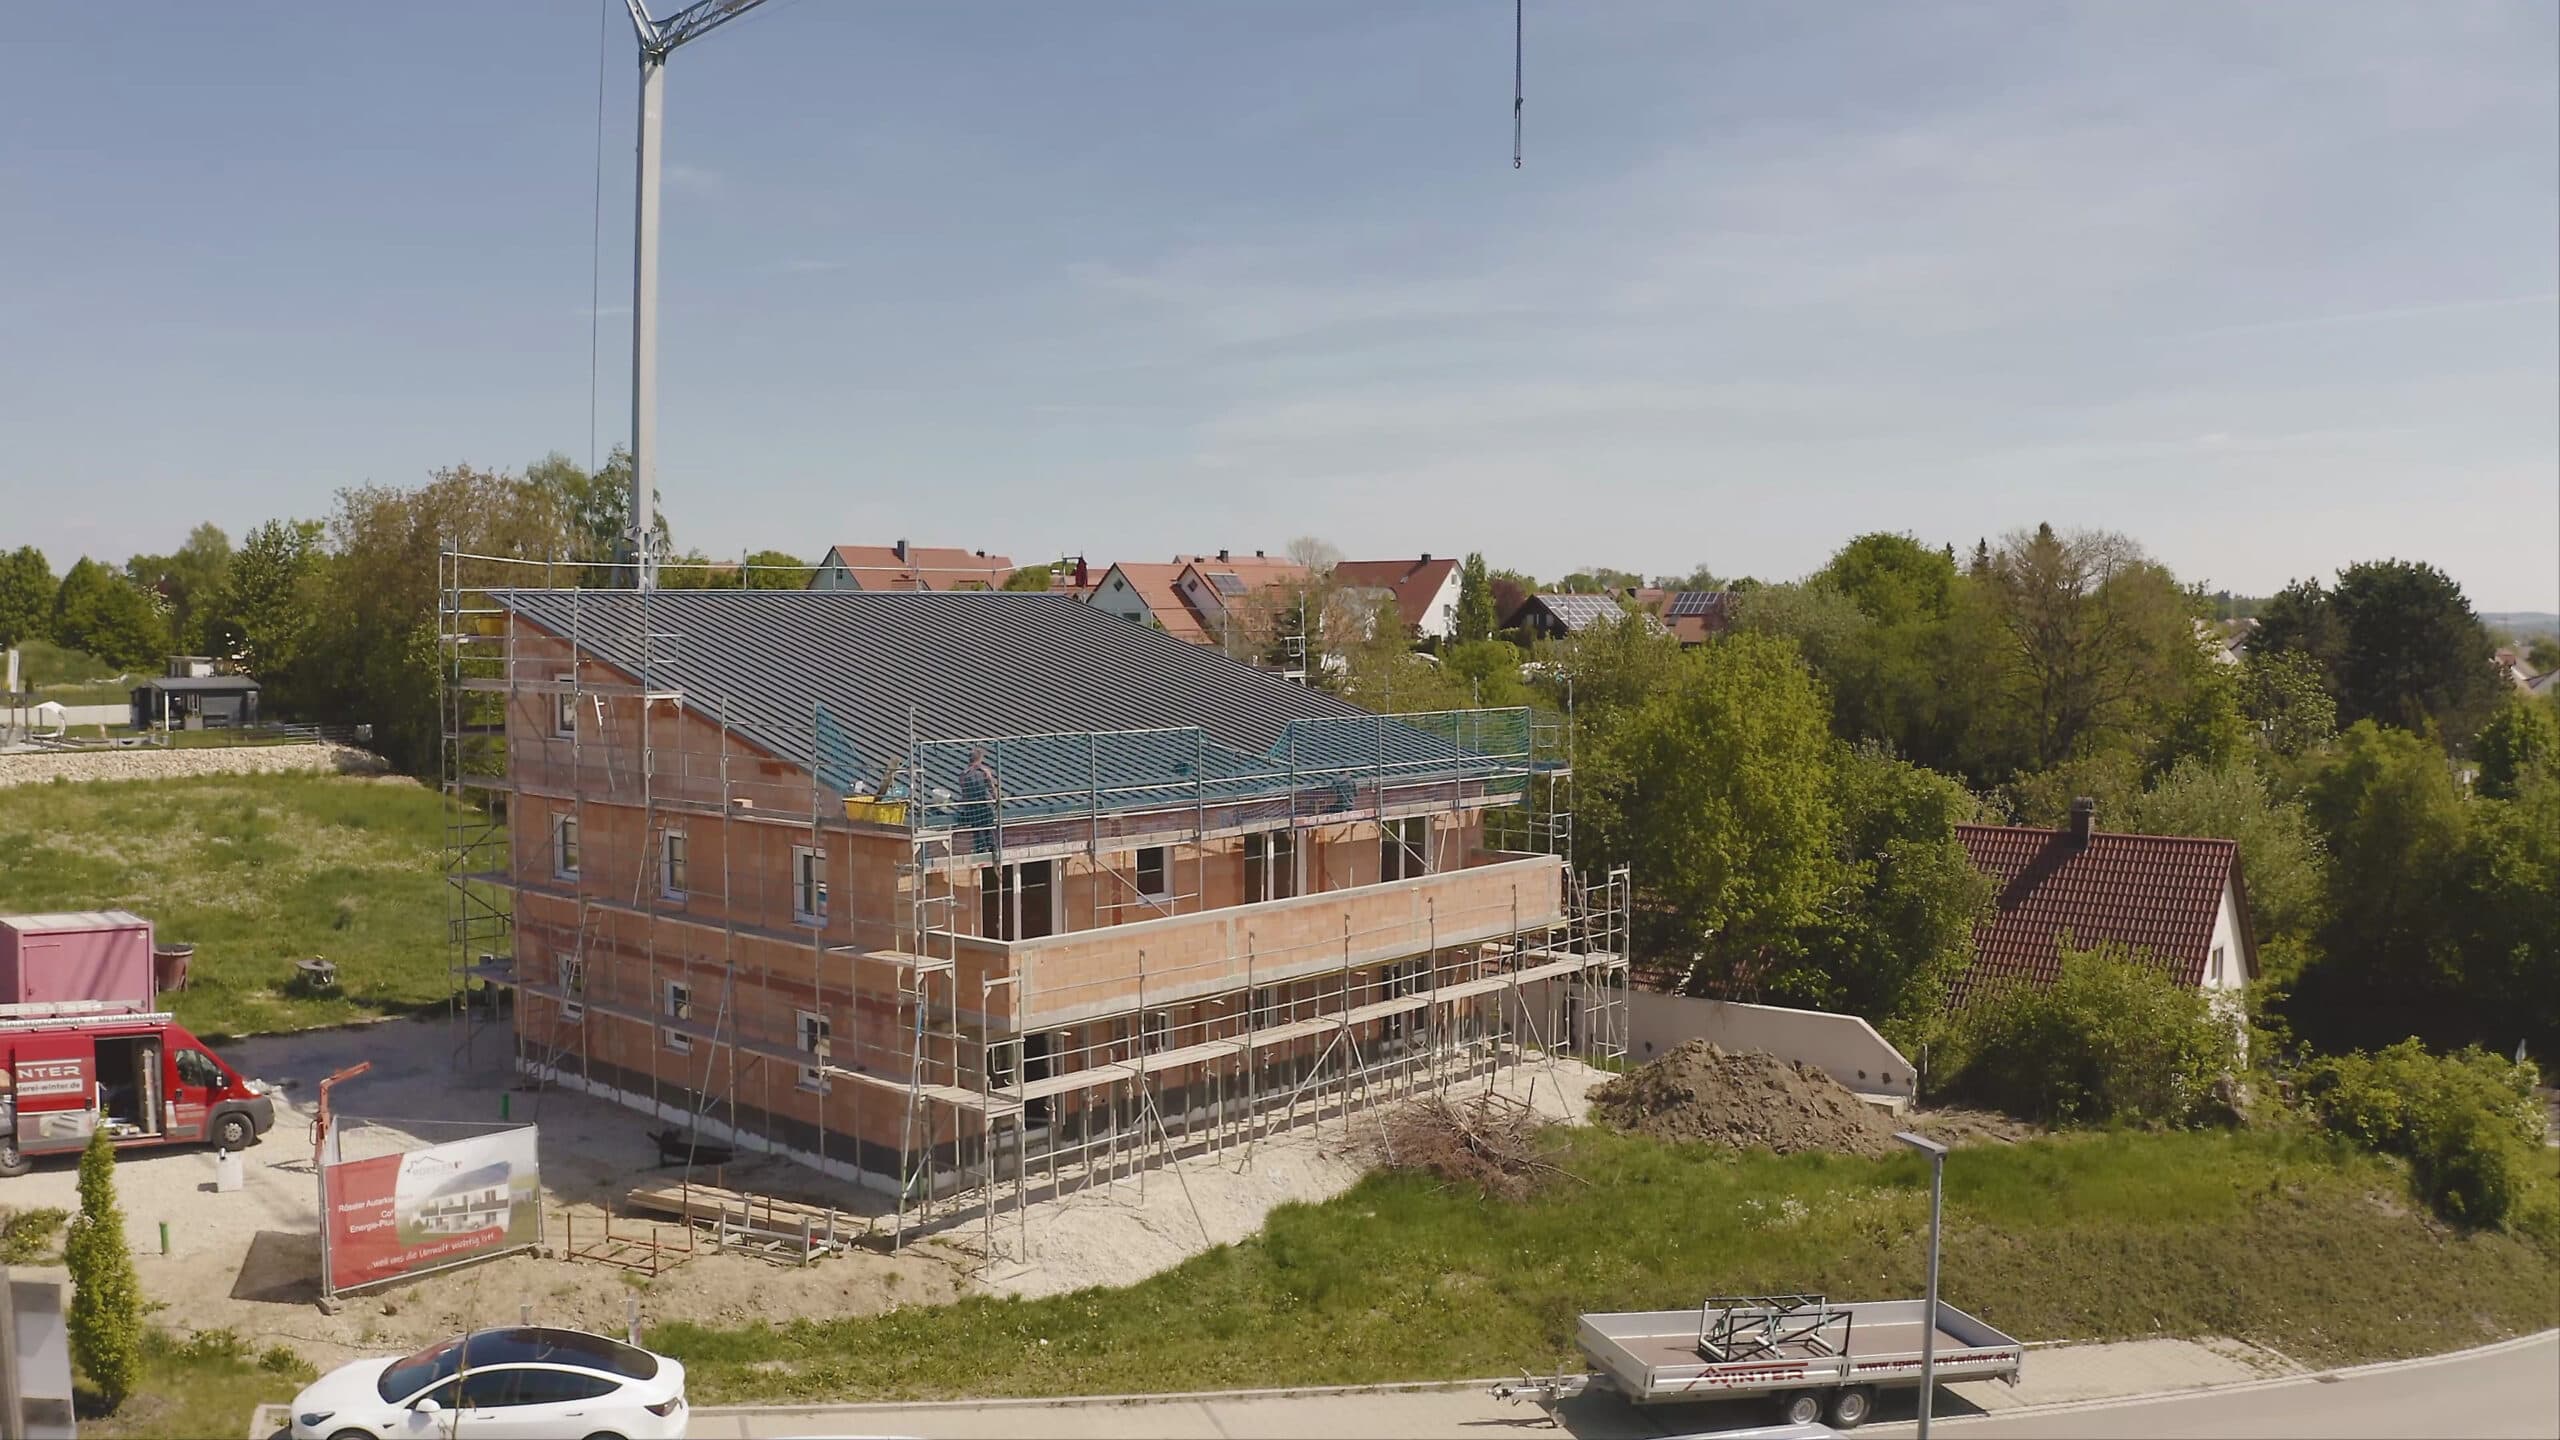 Bauprojekt Autarkiehaus in Bayern während Bauphase